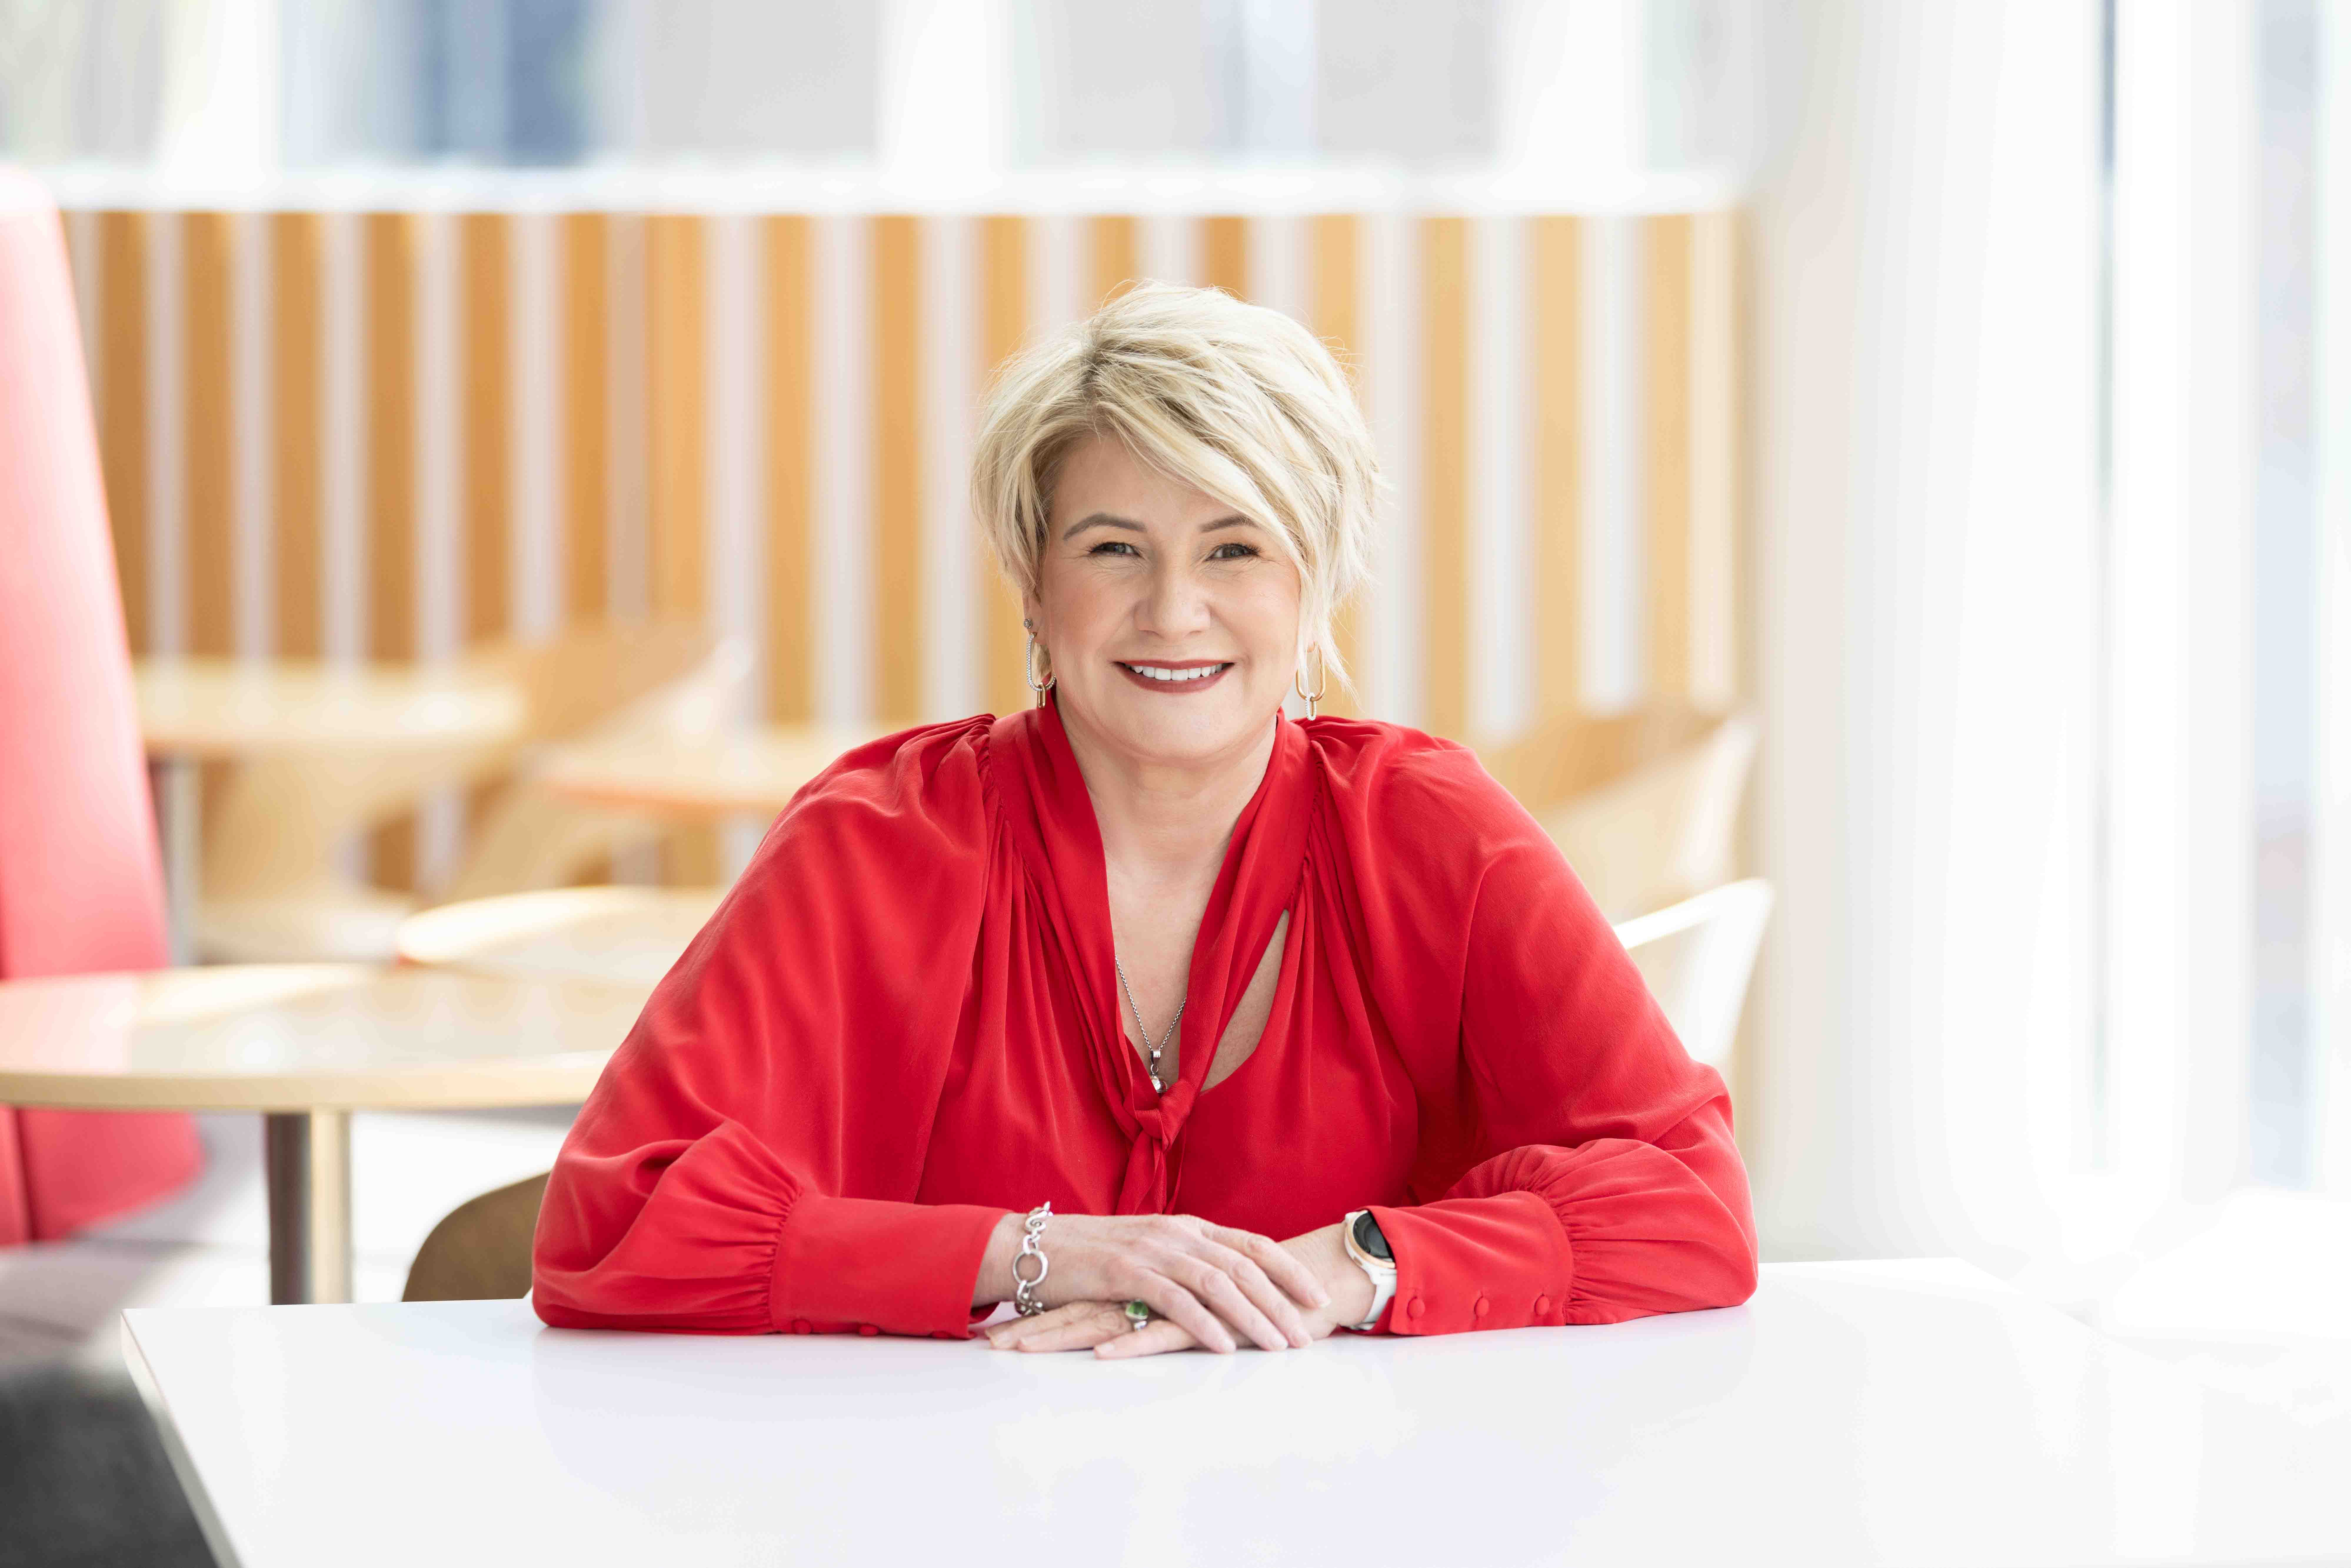 IAG New Zealand's chief executive Amanda Whiting sits at a table looking at the camera.